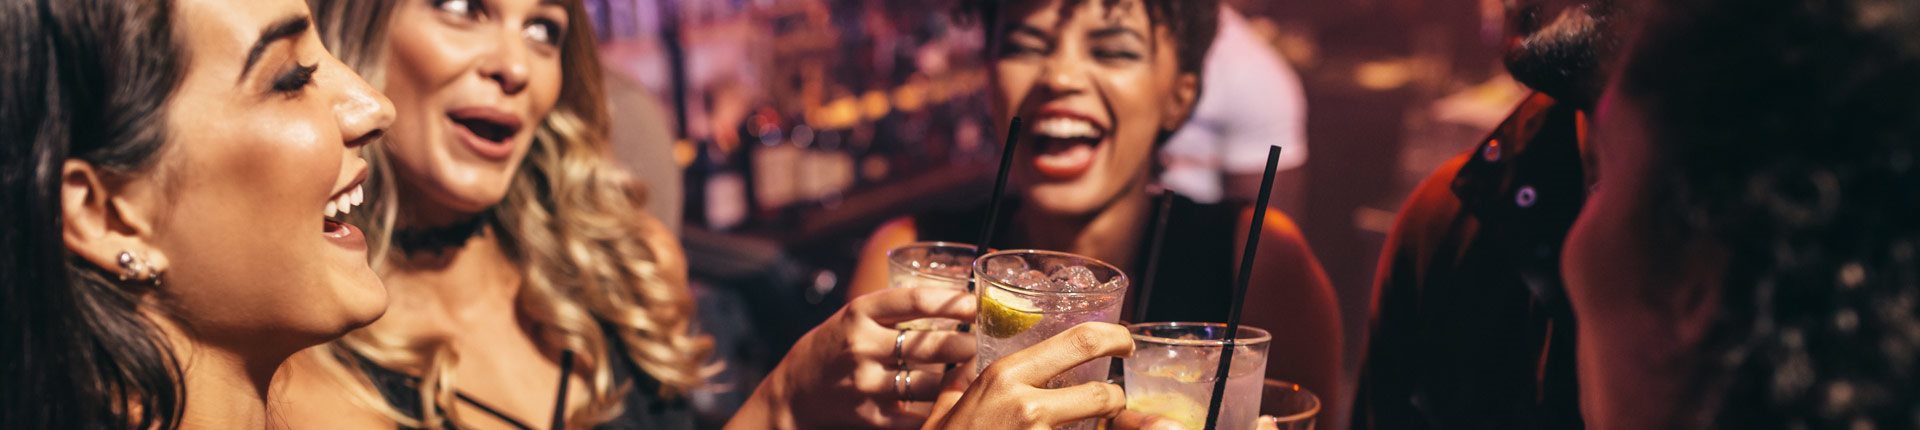 Rozsądne picie - jak zdrowo wejść w nowy rok 